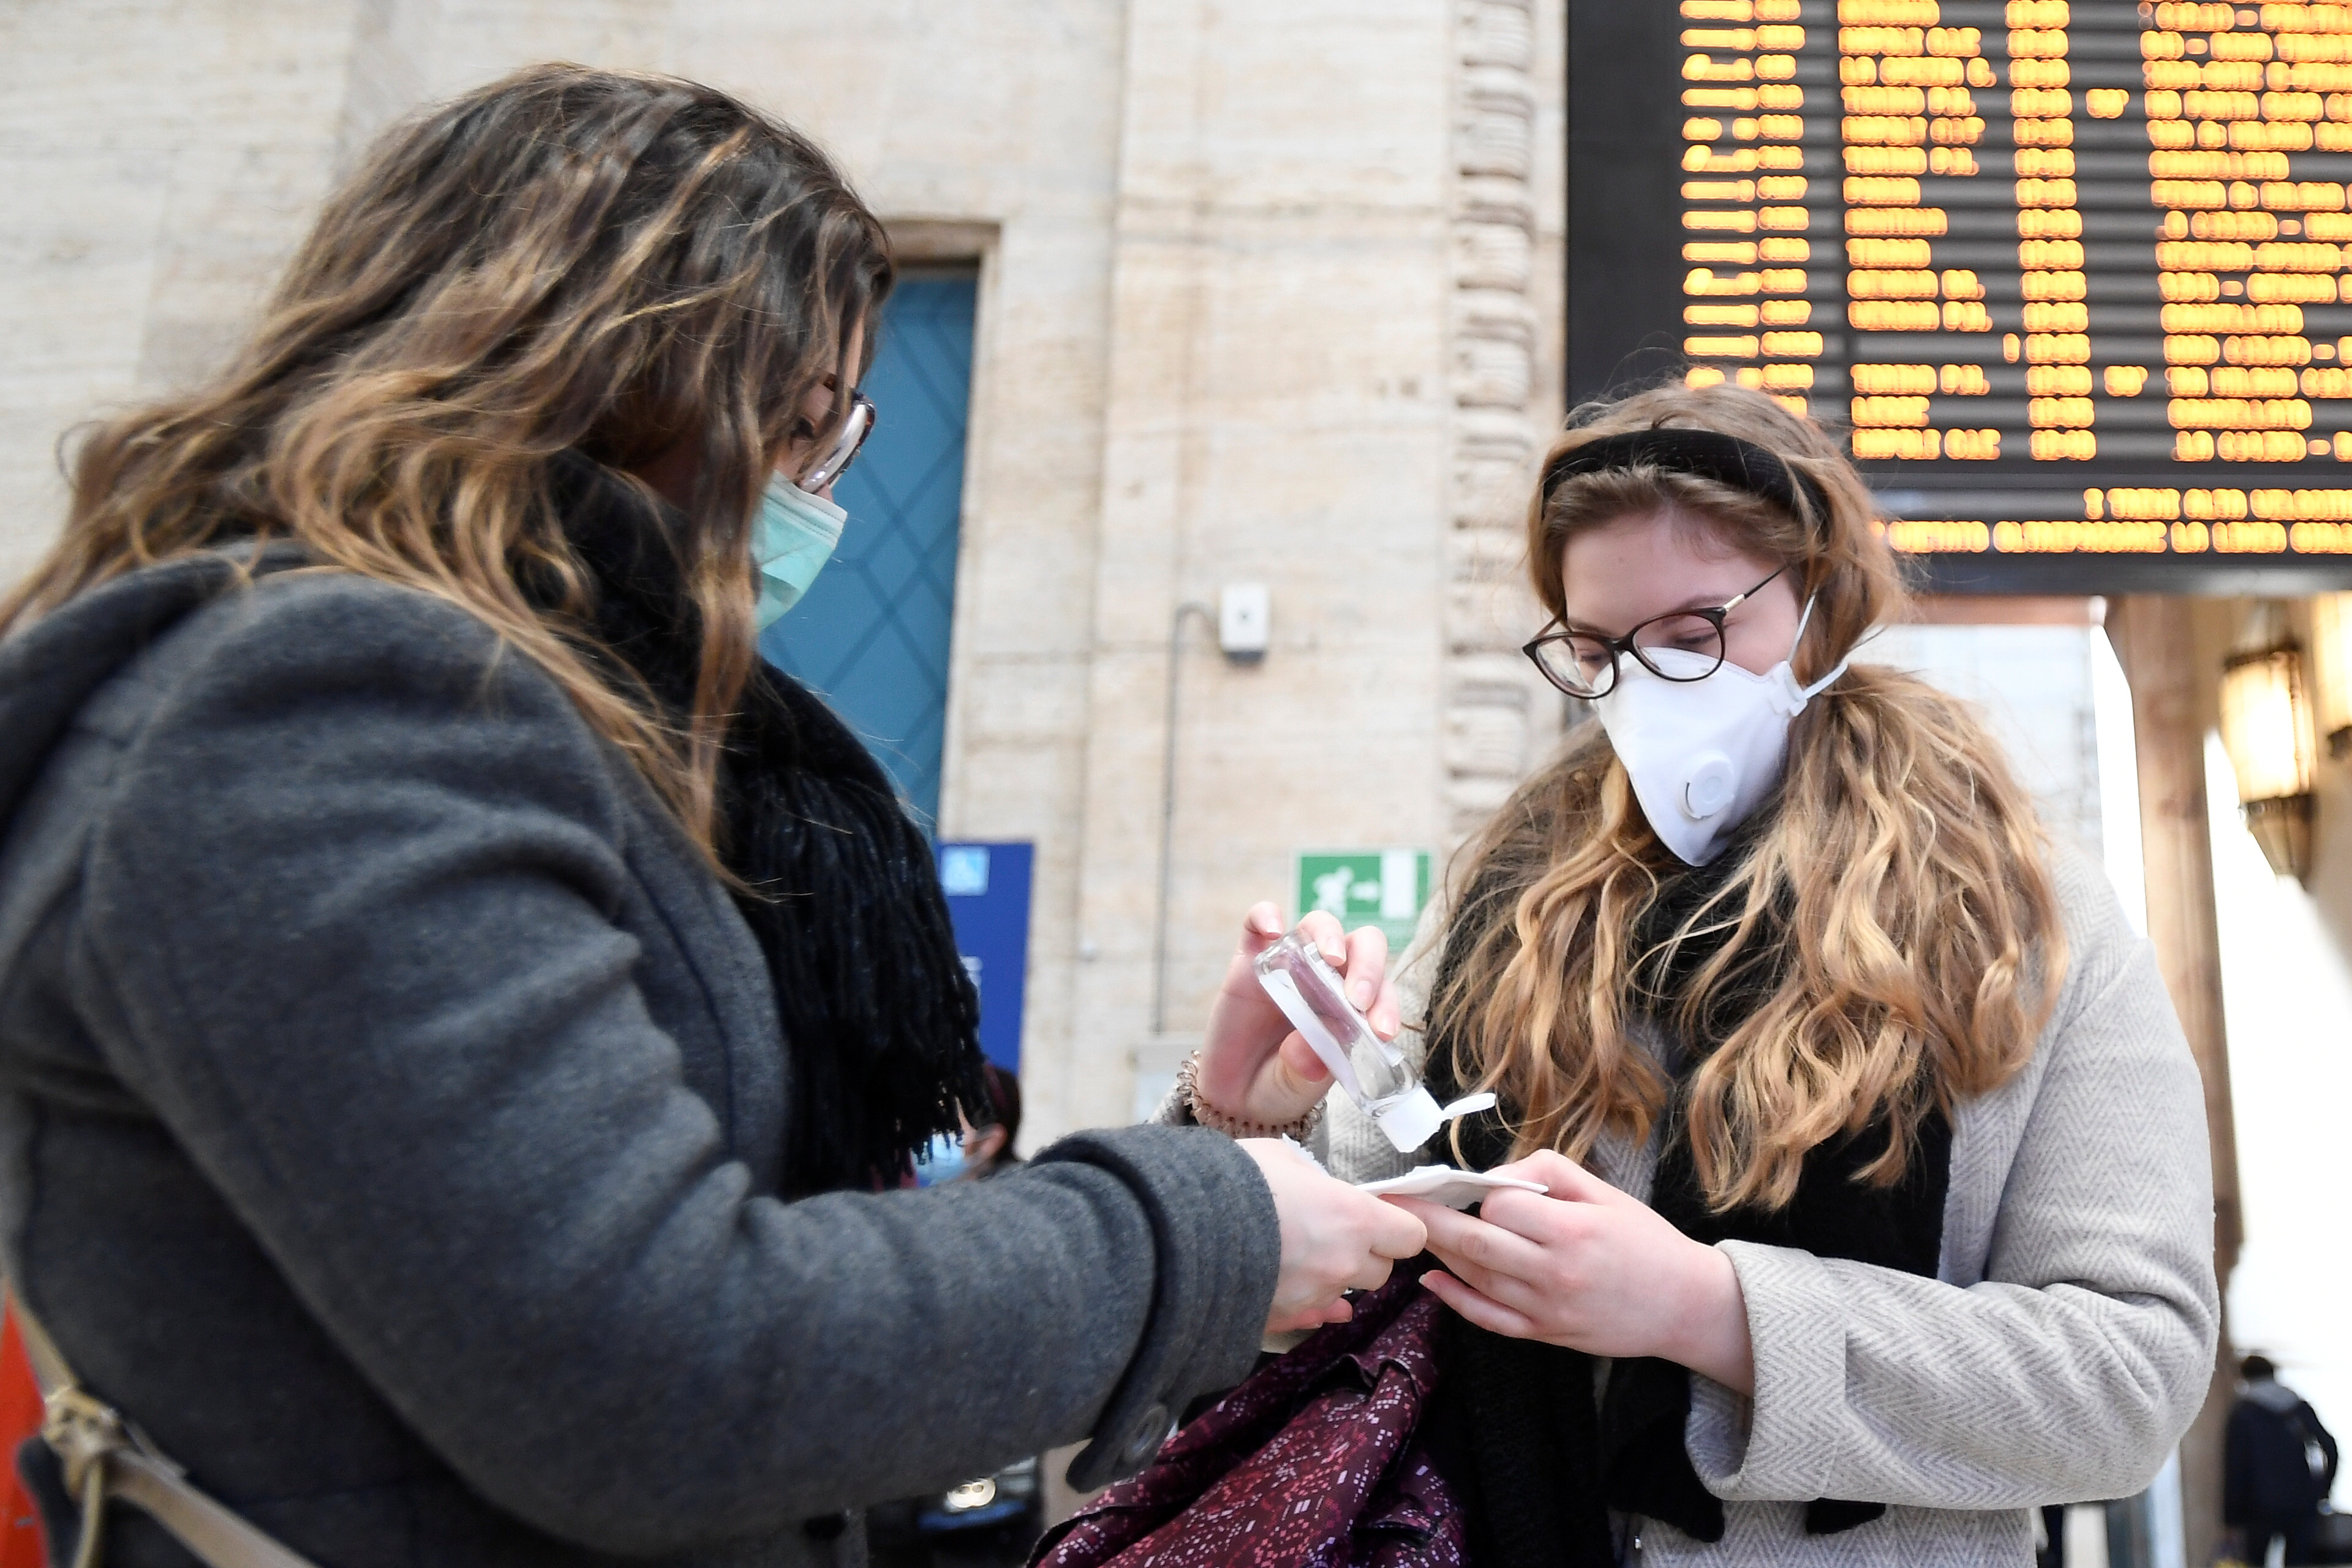 Italia elevó a 29 los muertos por coronavirus y confirmó 1.128 infectados